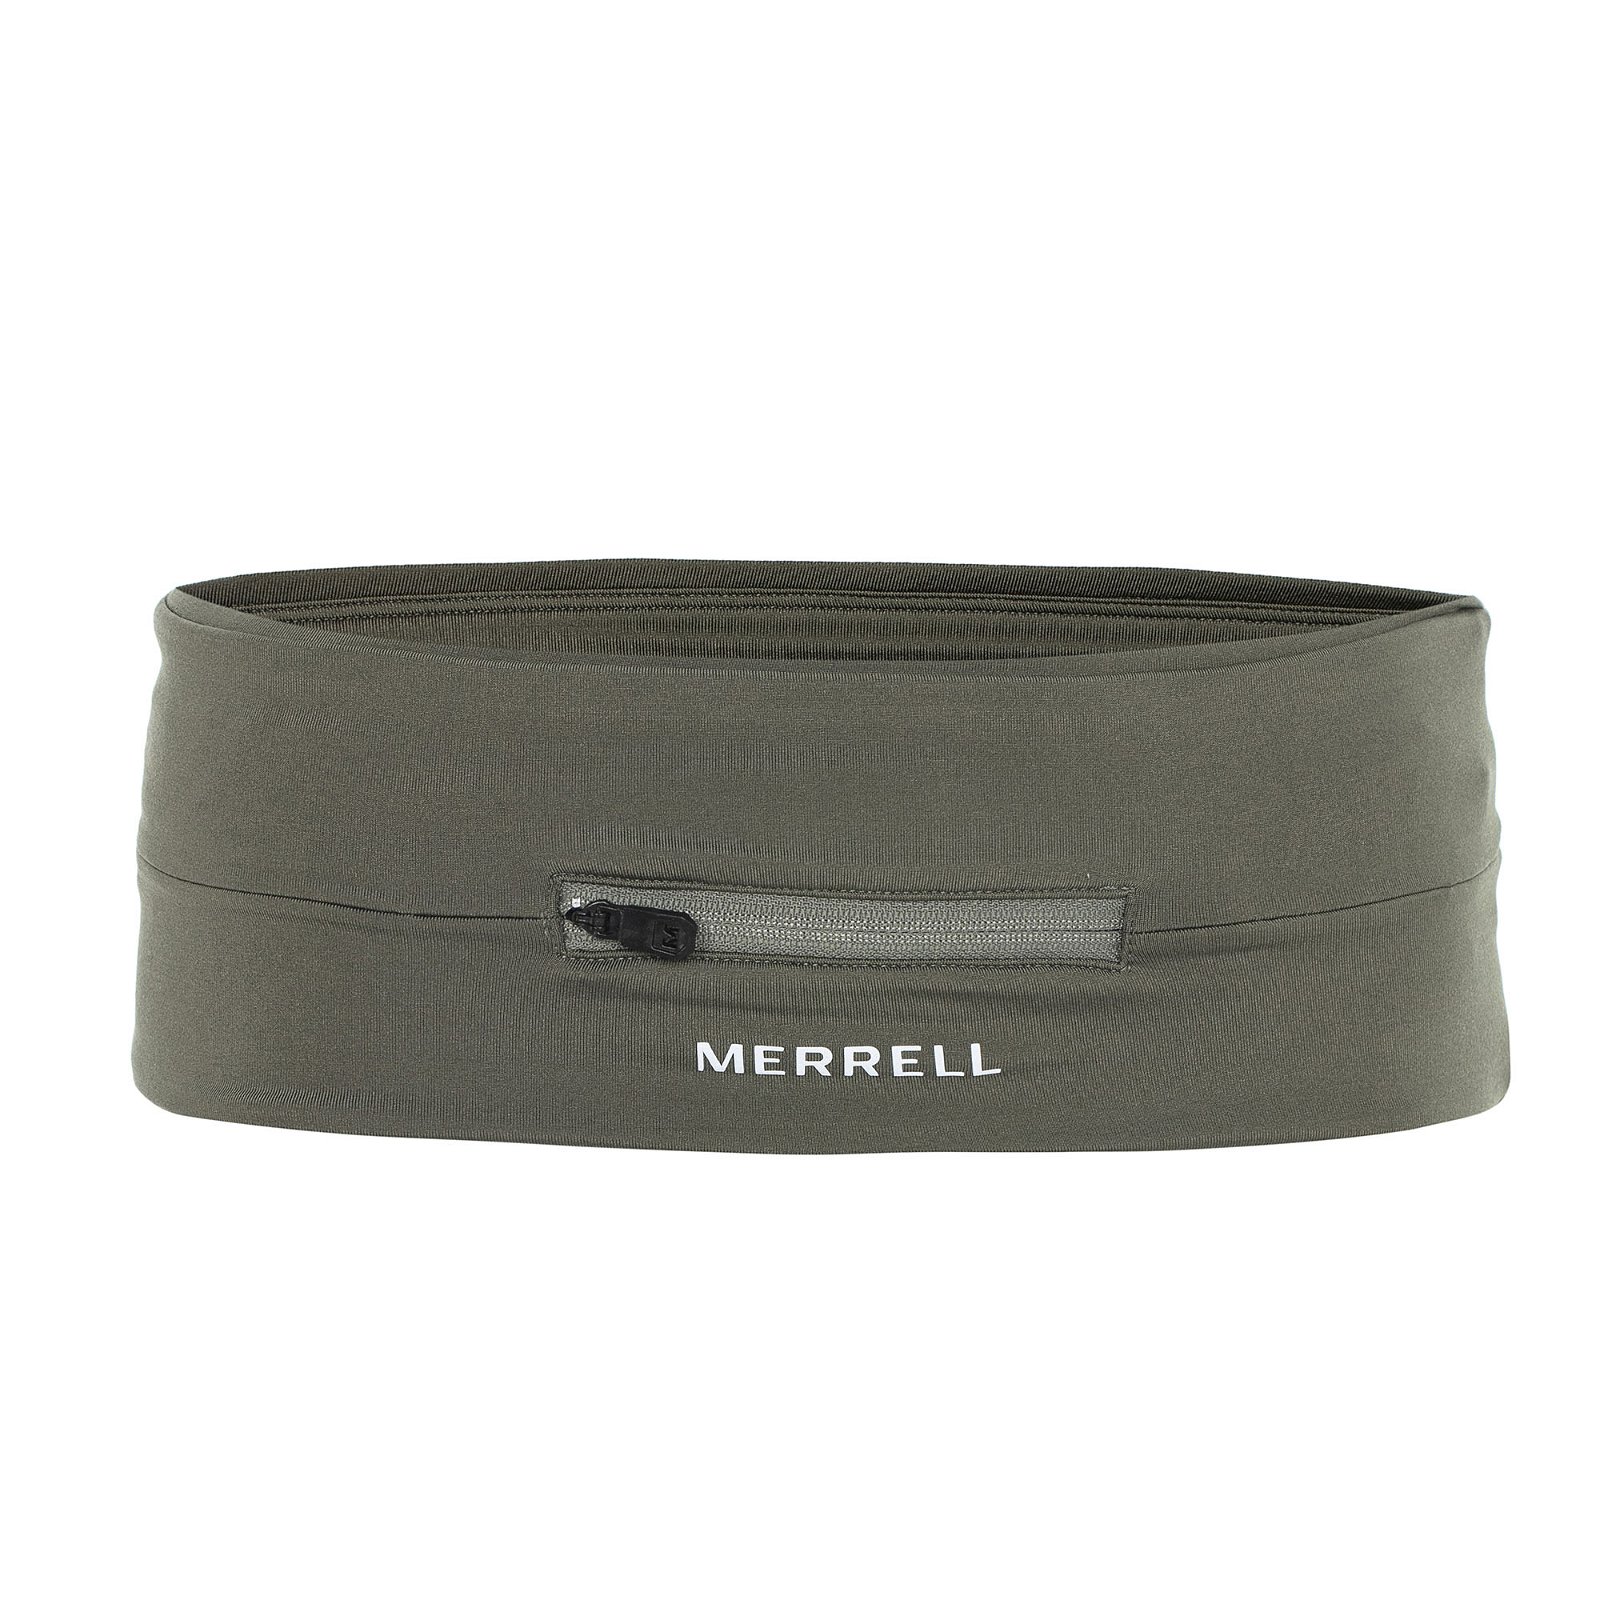 Merrell Bel Çantası - Haki - 1